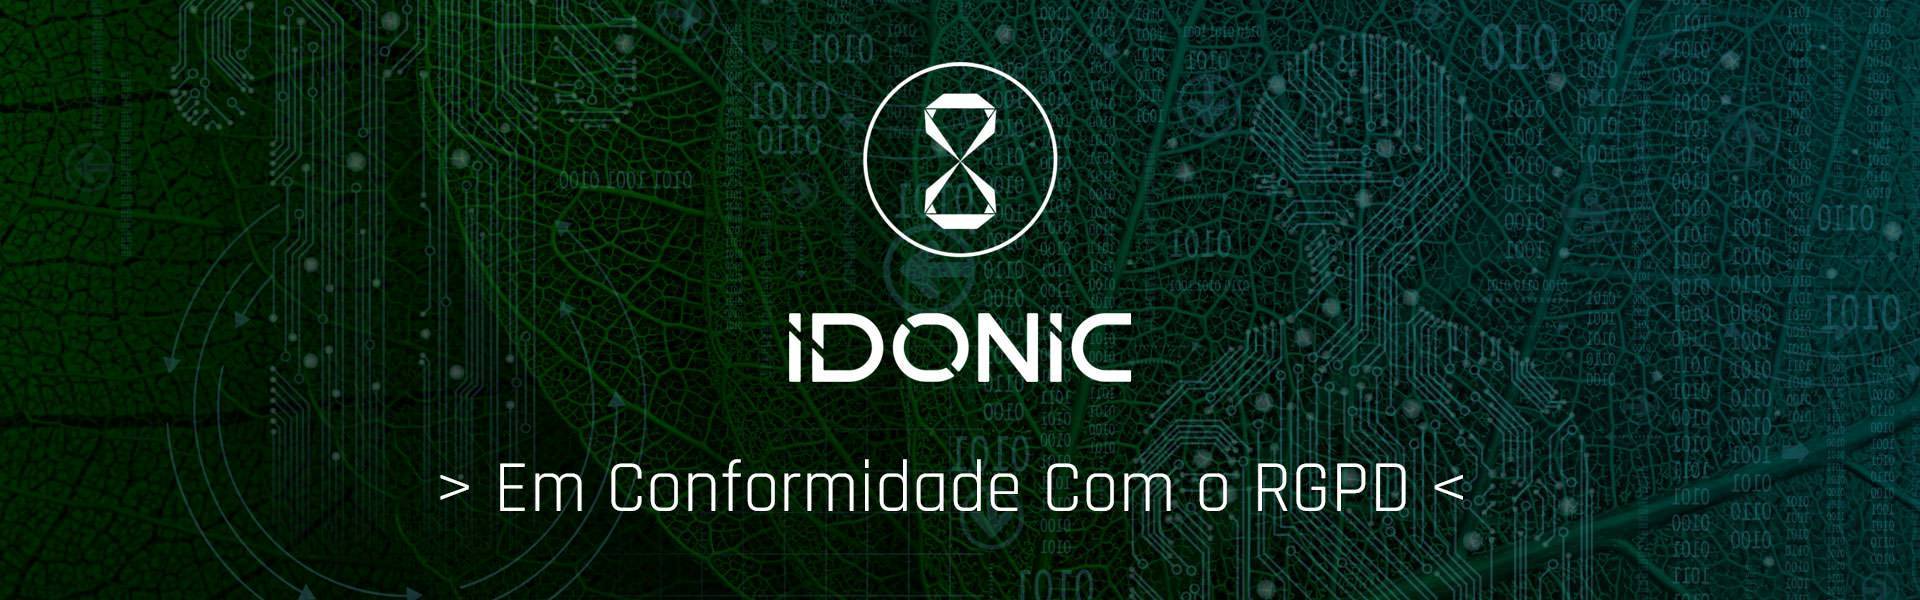 idonic-rgpd-protecao-dados-biometricos